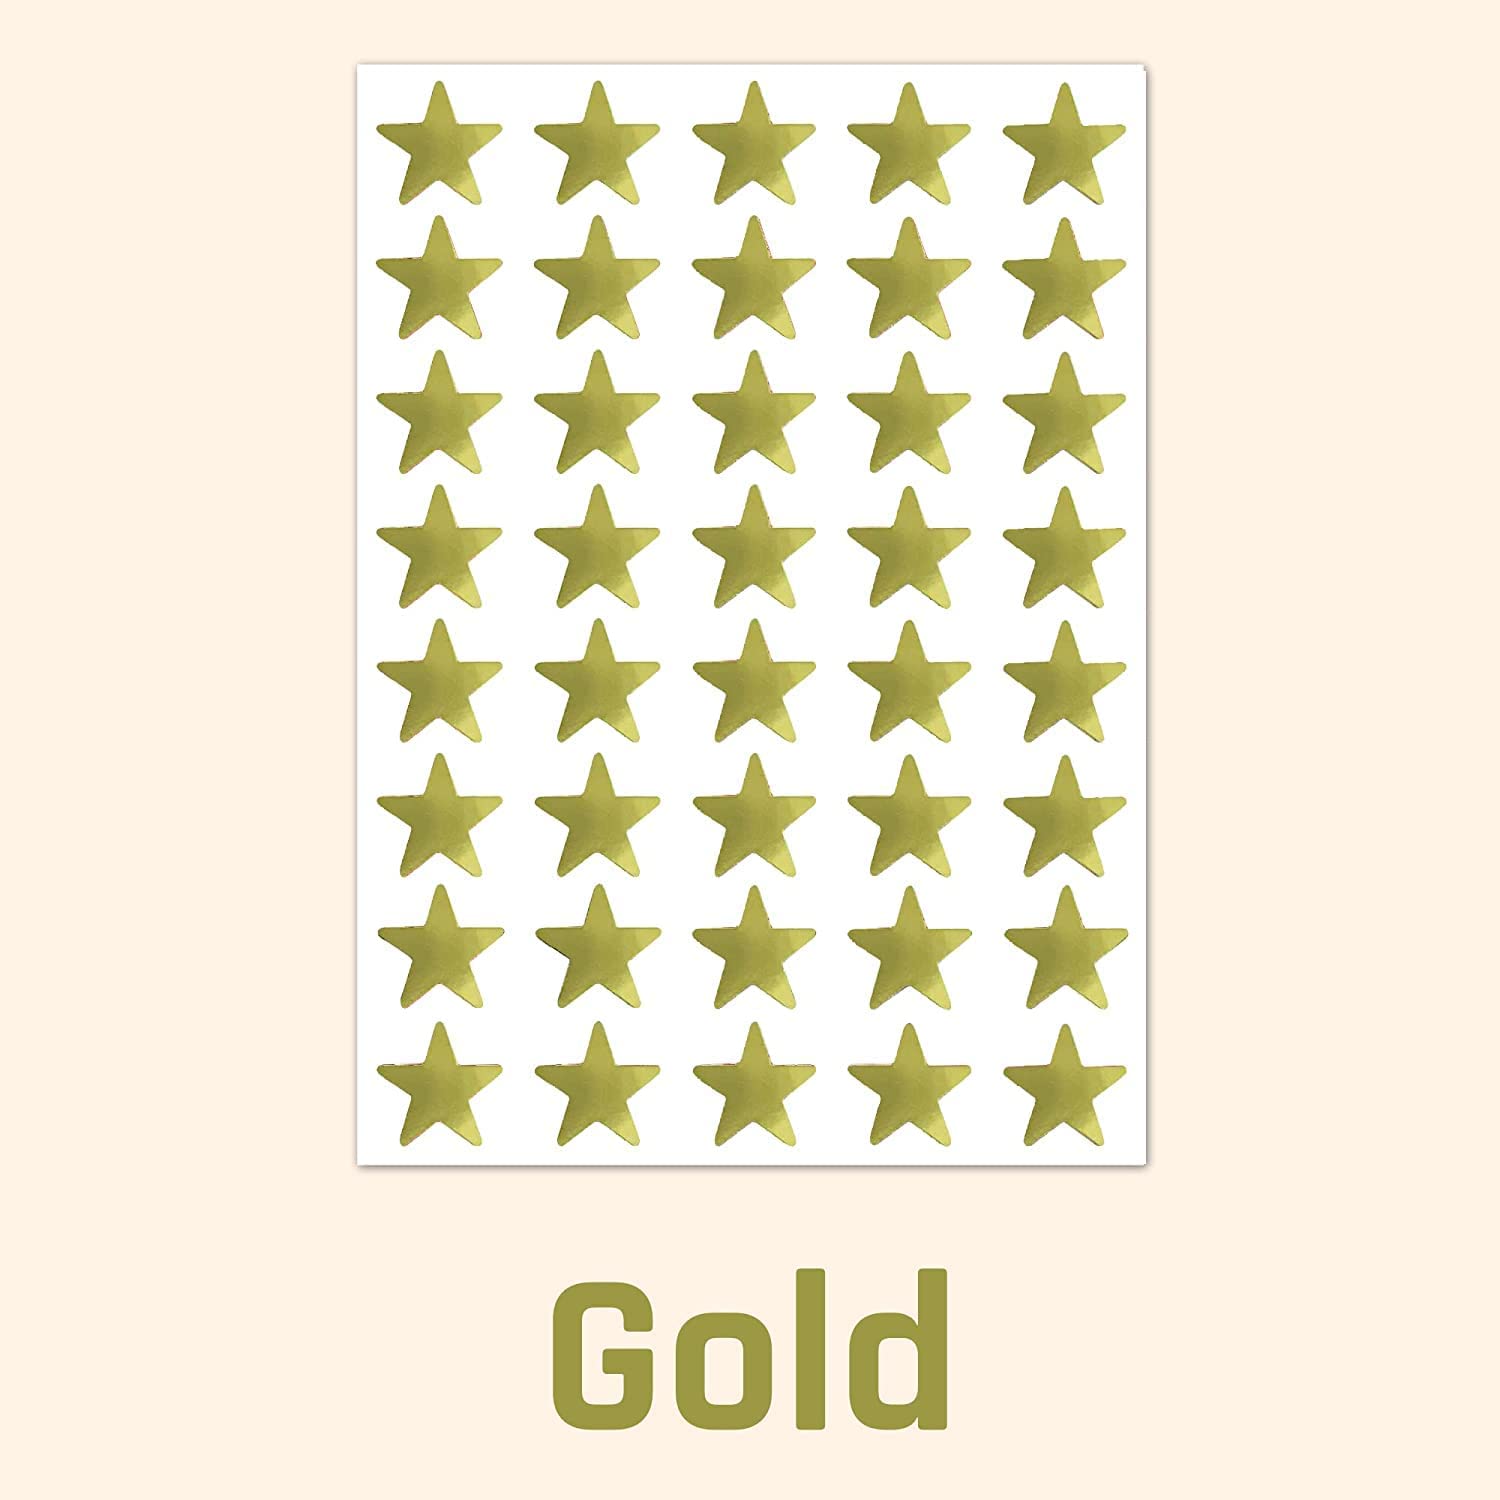 مجموعة ستيكر لاصق بتصميم نجوم من الفويل بلون ذهبي مكون من 1000 قطعة